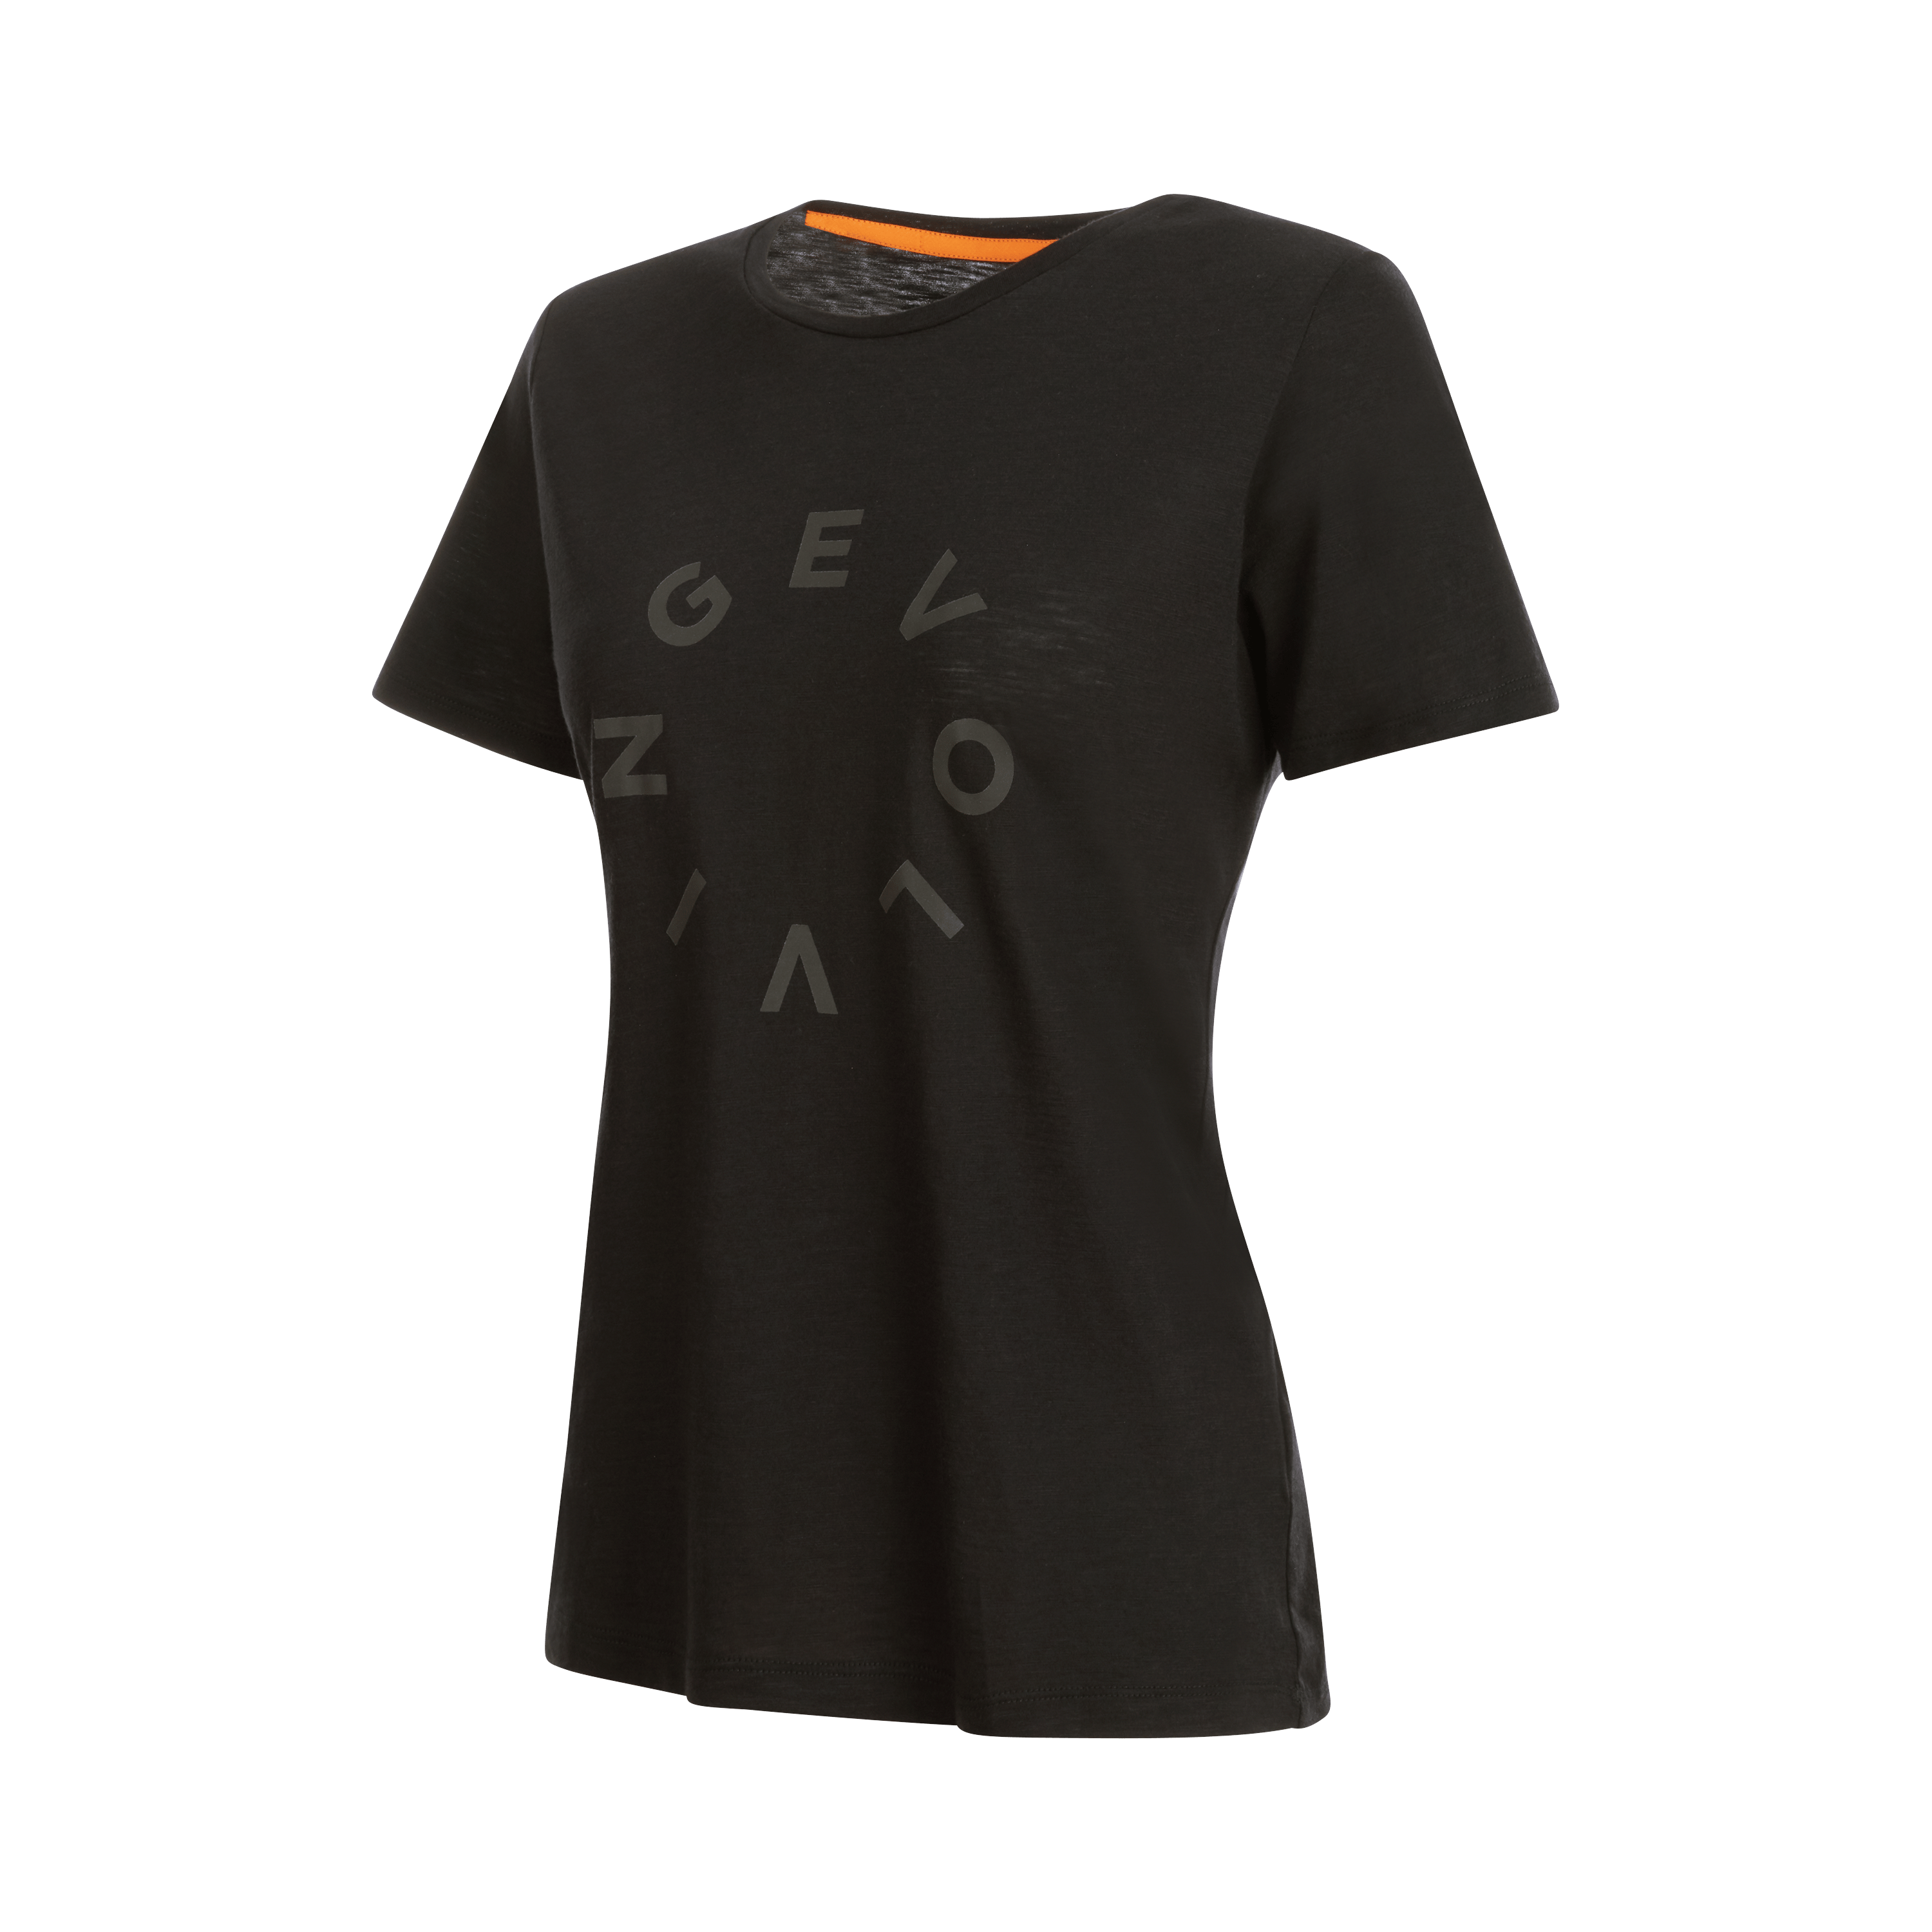 Teufelsberg T-Shirt Women